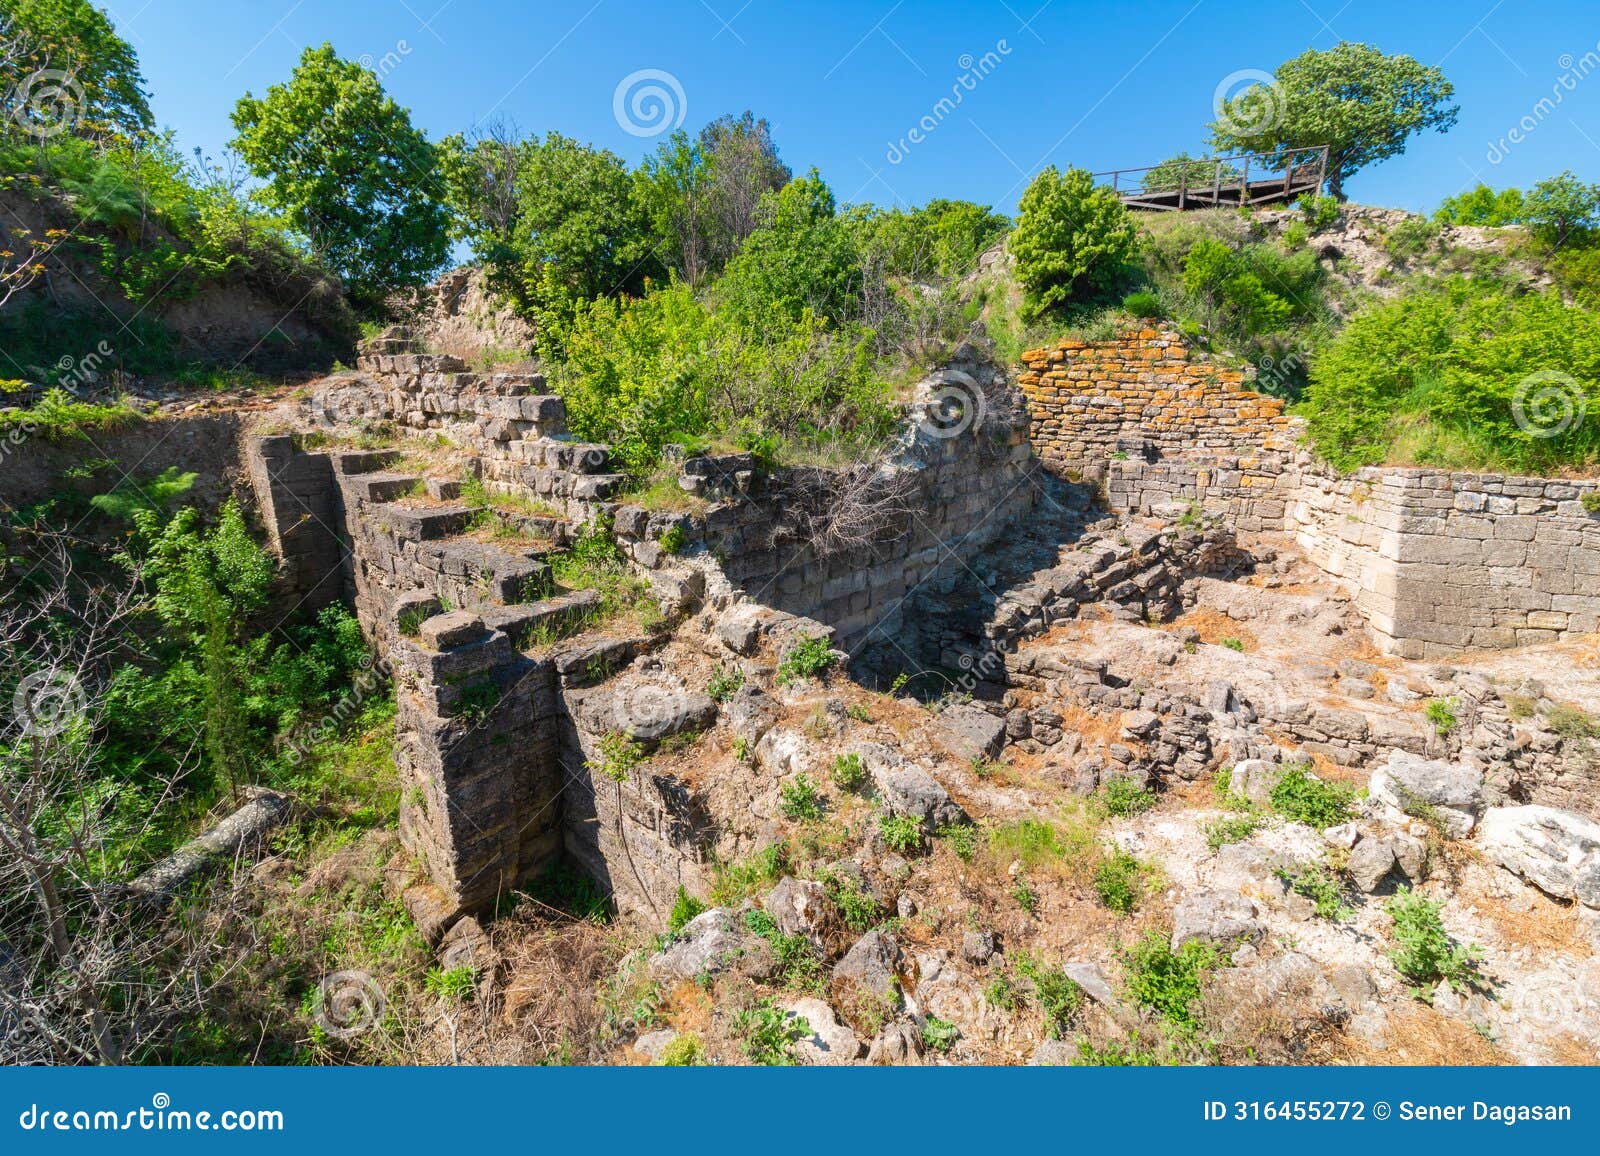 ruins of troy in canakkale turkey.